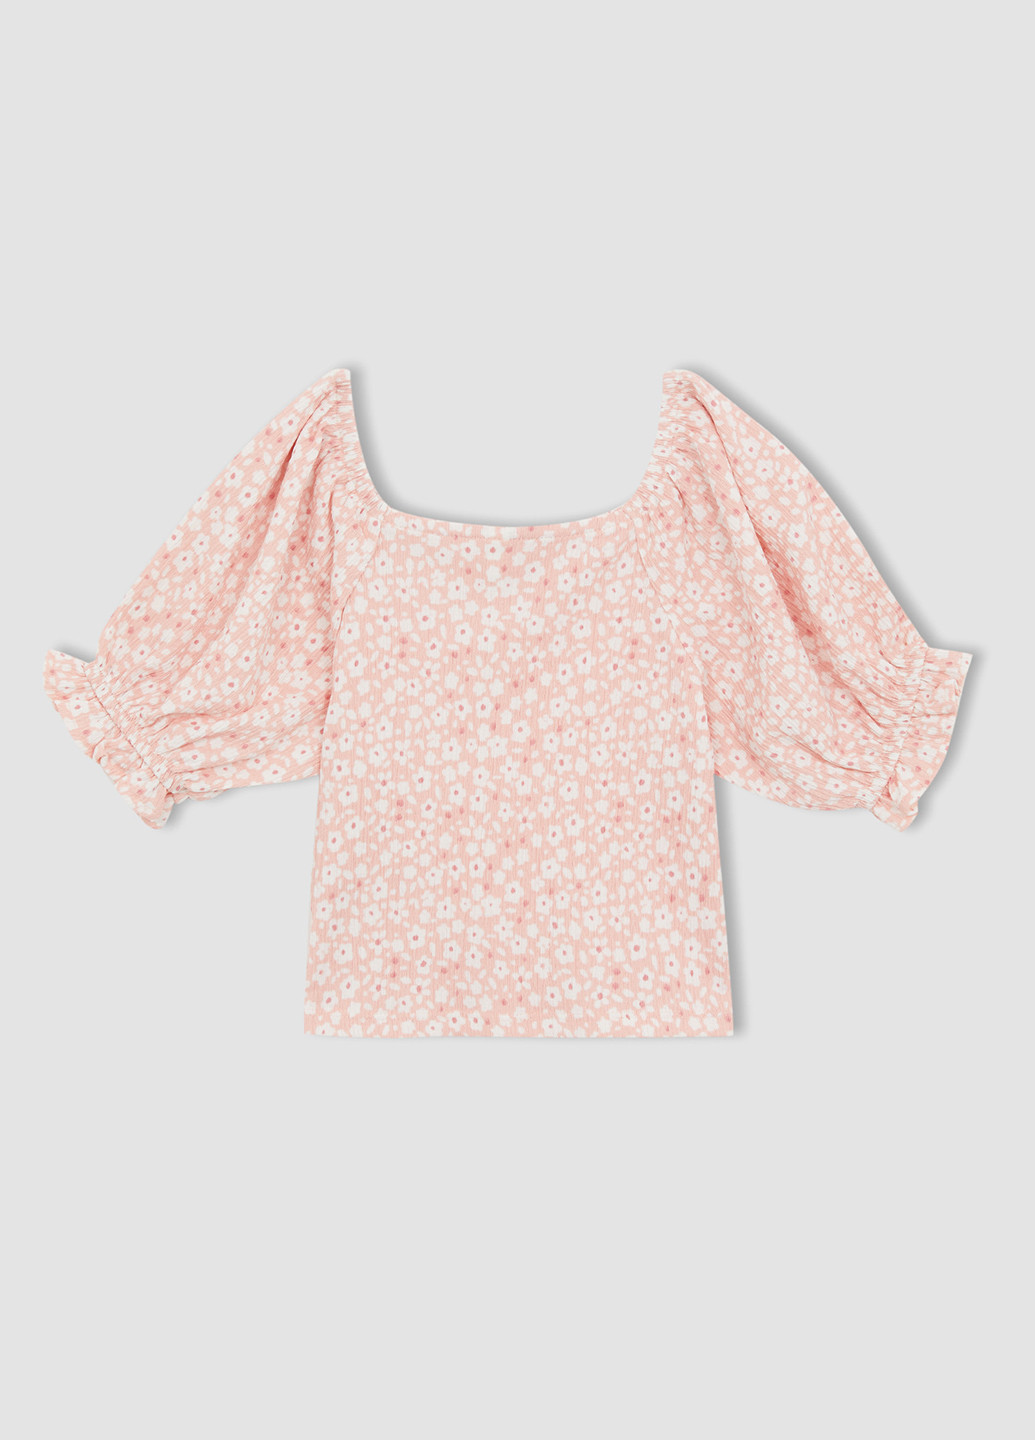 Светло-розовая цветочной расцветки блузка DeFacto летняя